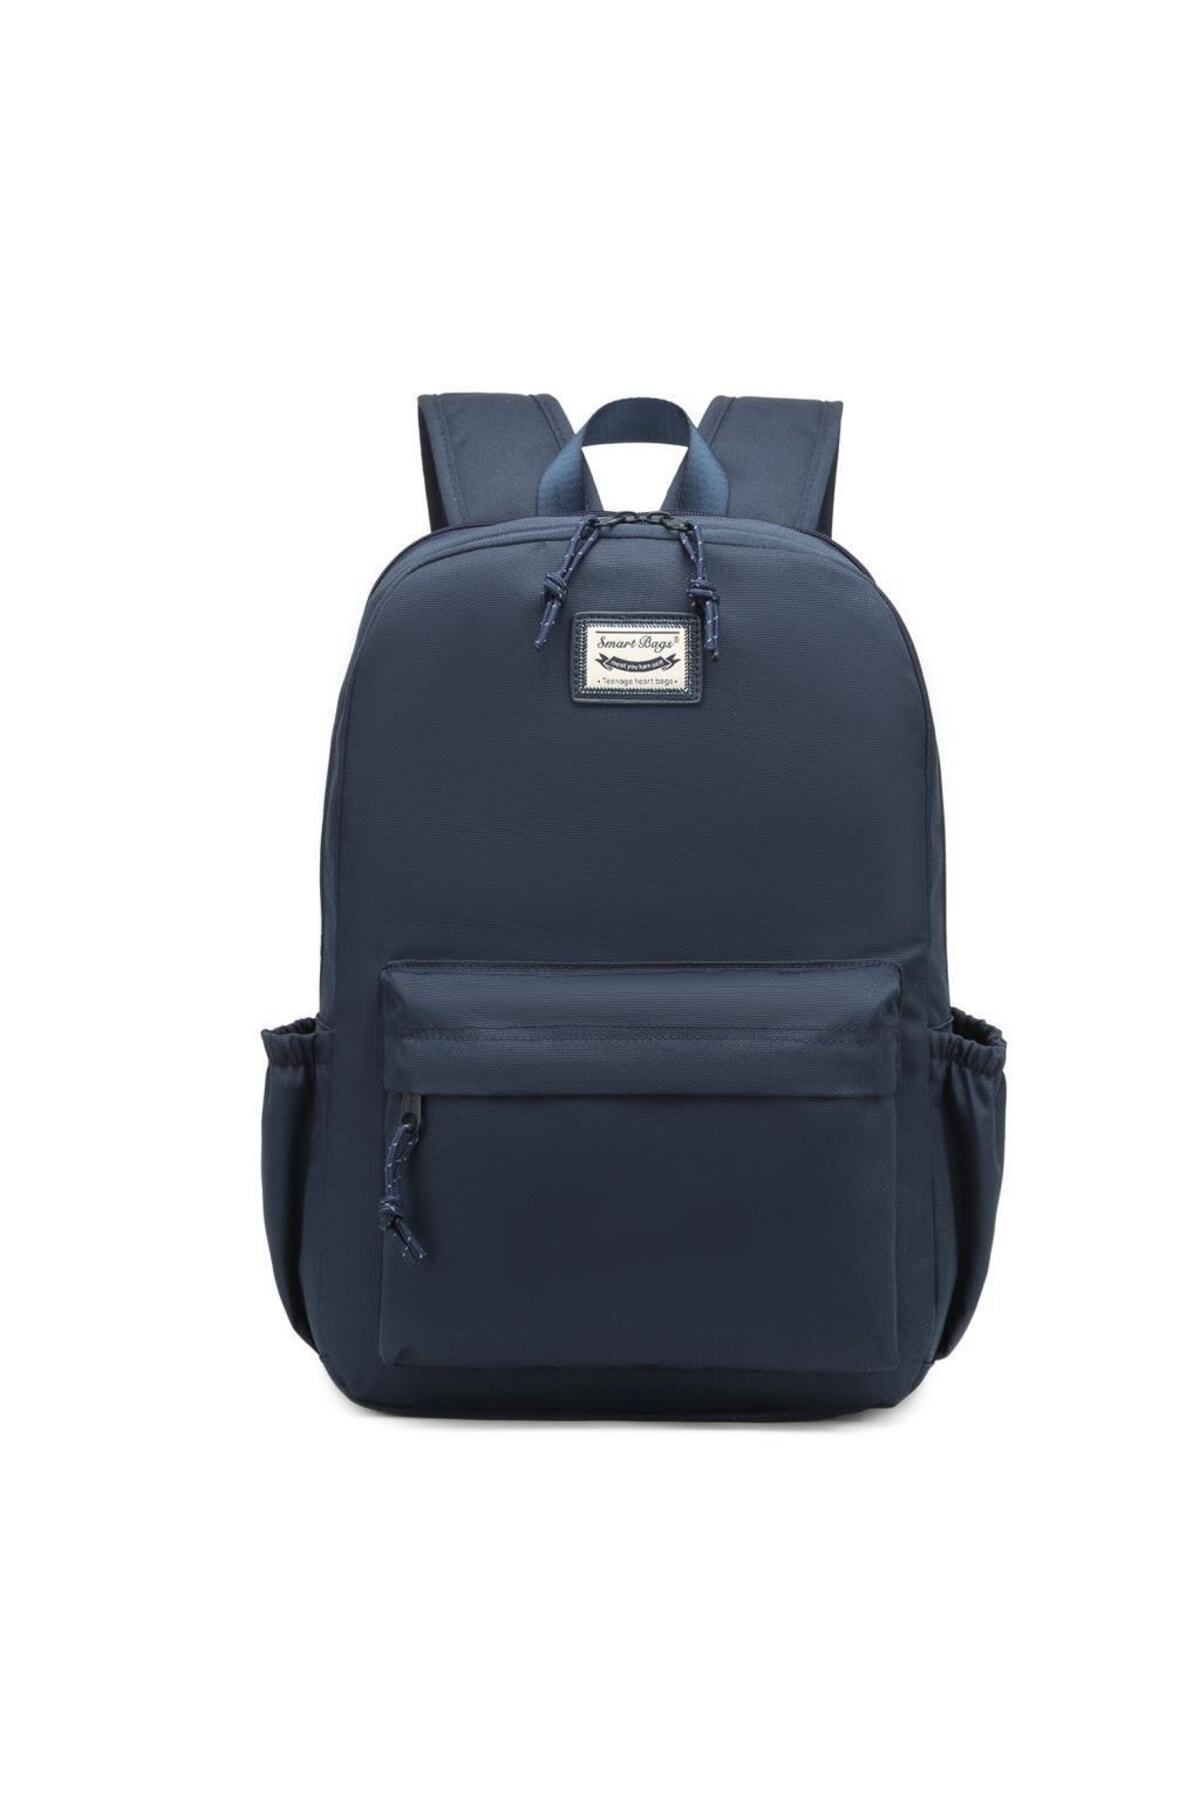 Smart Bags Algstore (Smart Bags) Sırt Çantası Okul Boyu Laptop Gözlü 3157